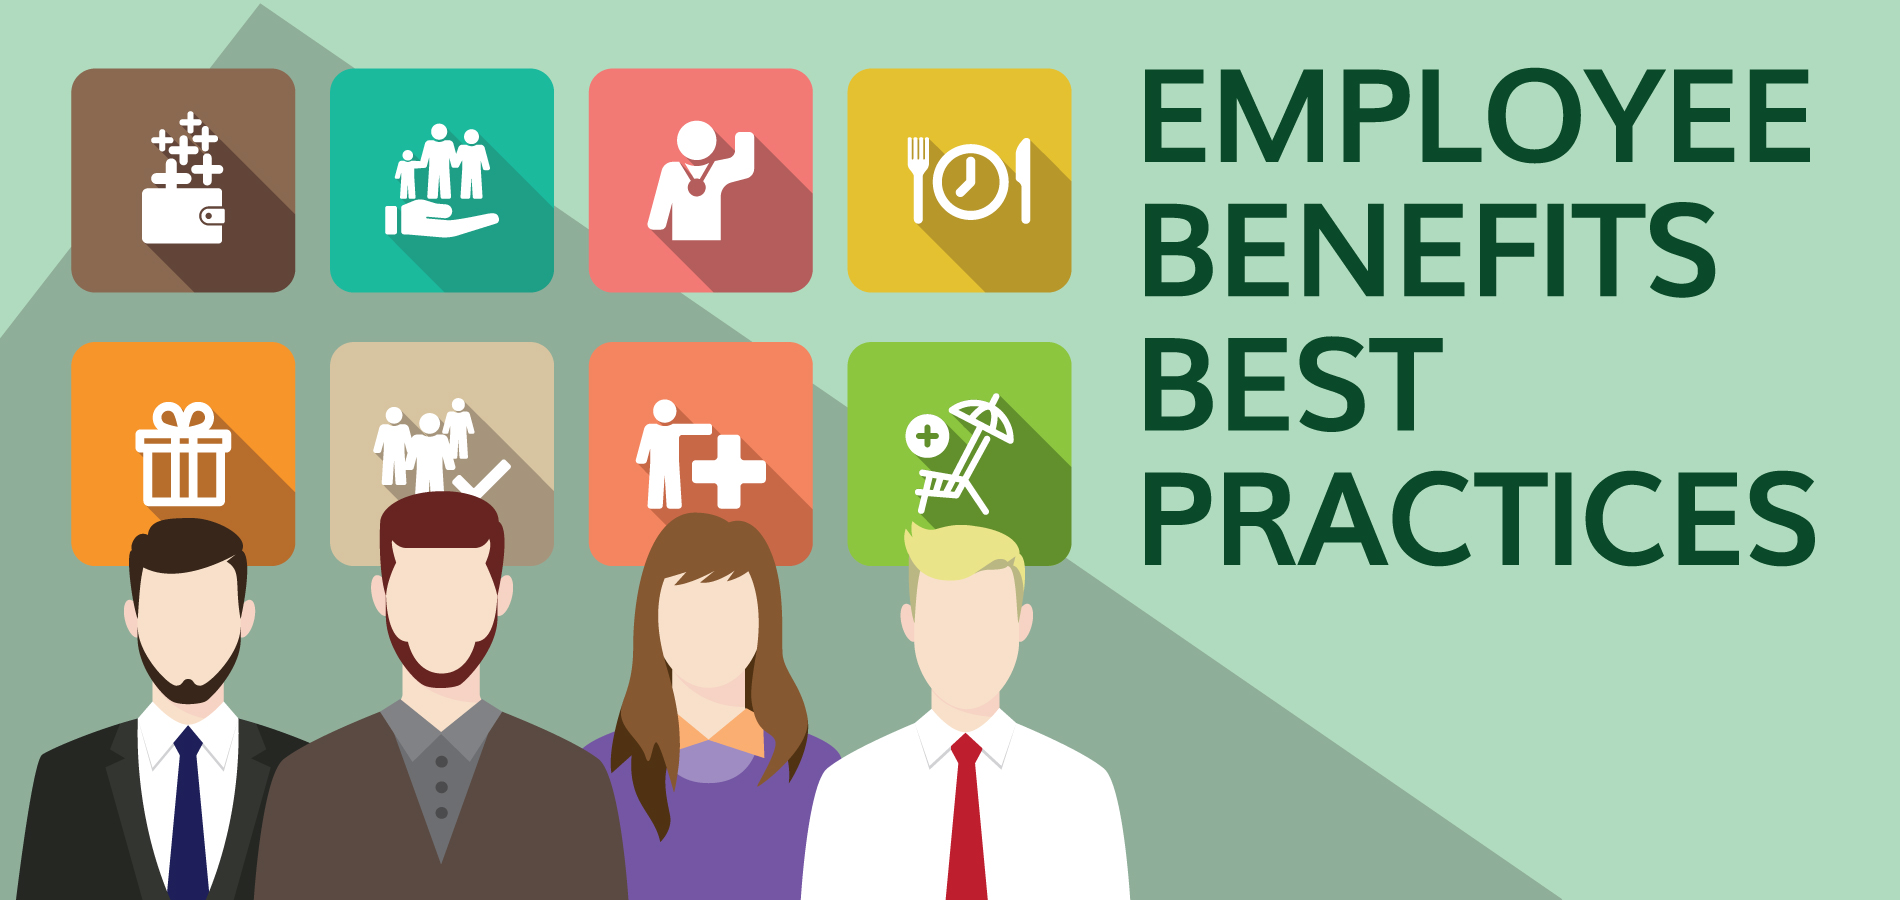 Employee benefits best practices